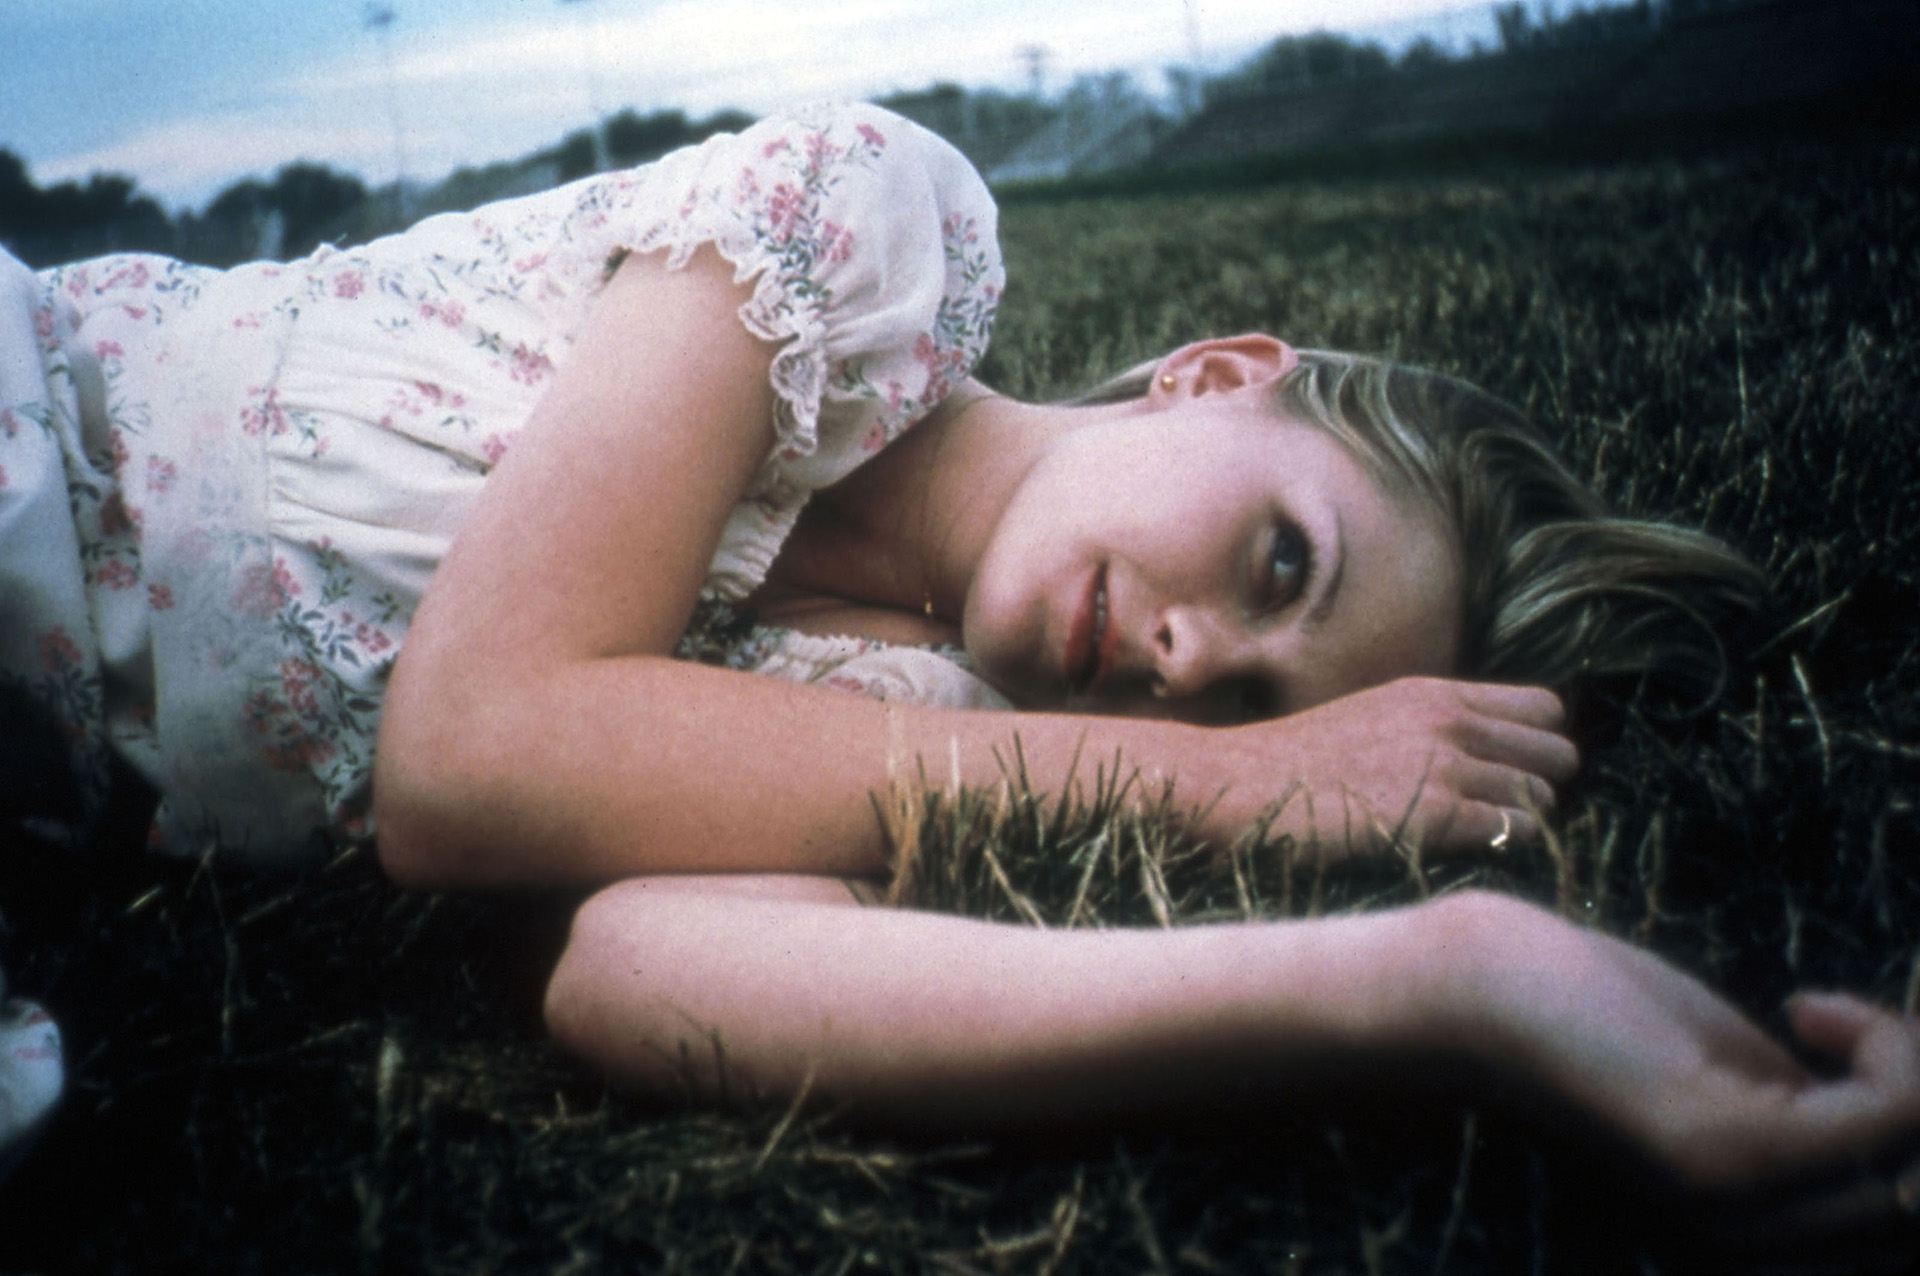 Kirsten Dunst interpretó a Lux en Vírgenes suicidas. Al principio dudó en aceptar: "Cuando leí el guion estaba un poco nerviosa porque salía besando a todos esos chicos y me abrumaba, solo tenía 16 años" (Foto: The Grosby Group)